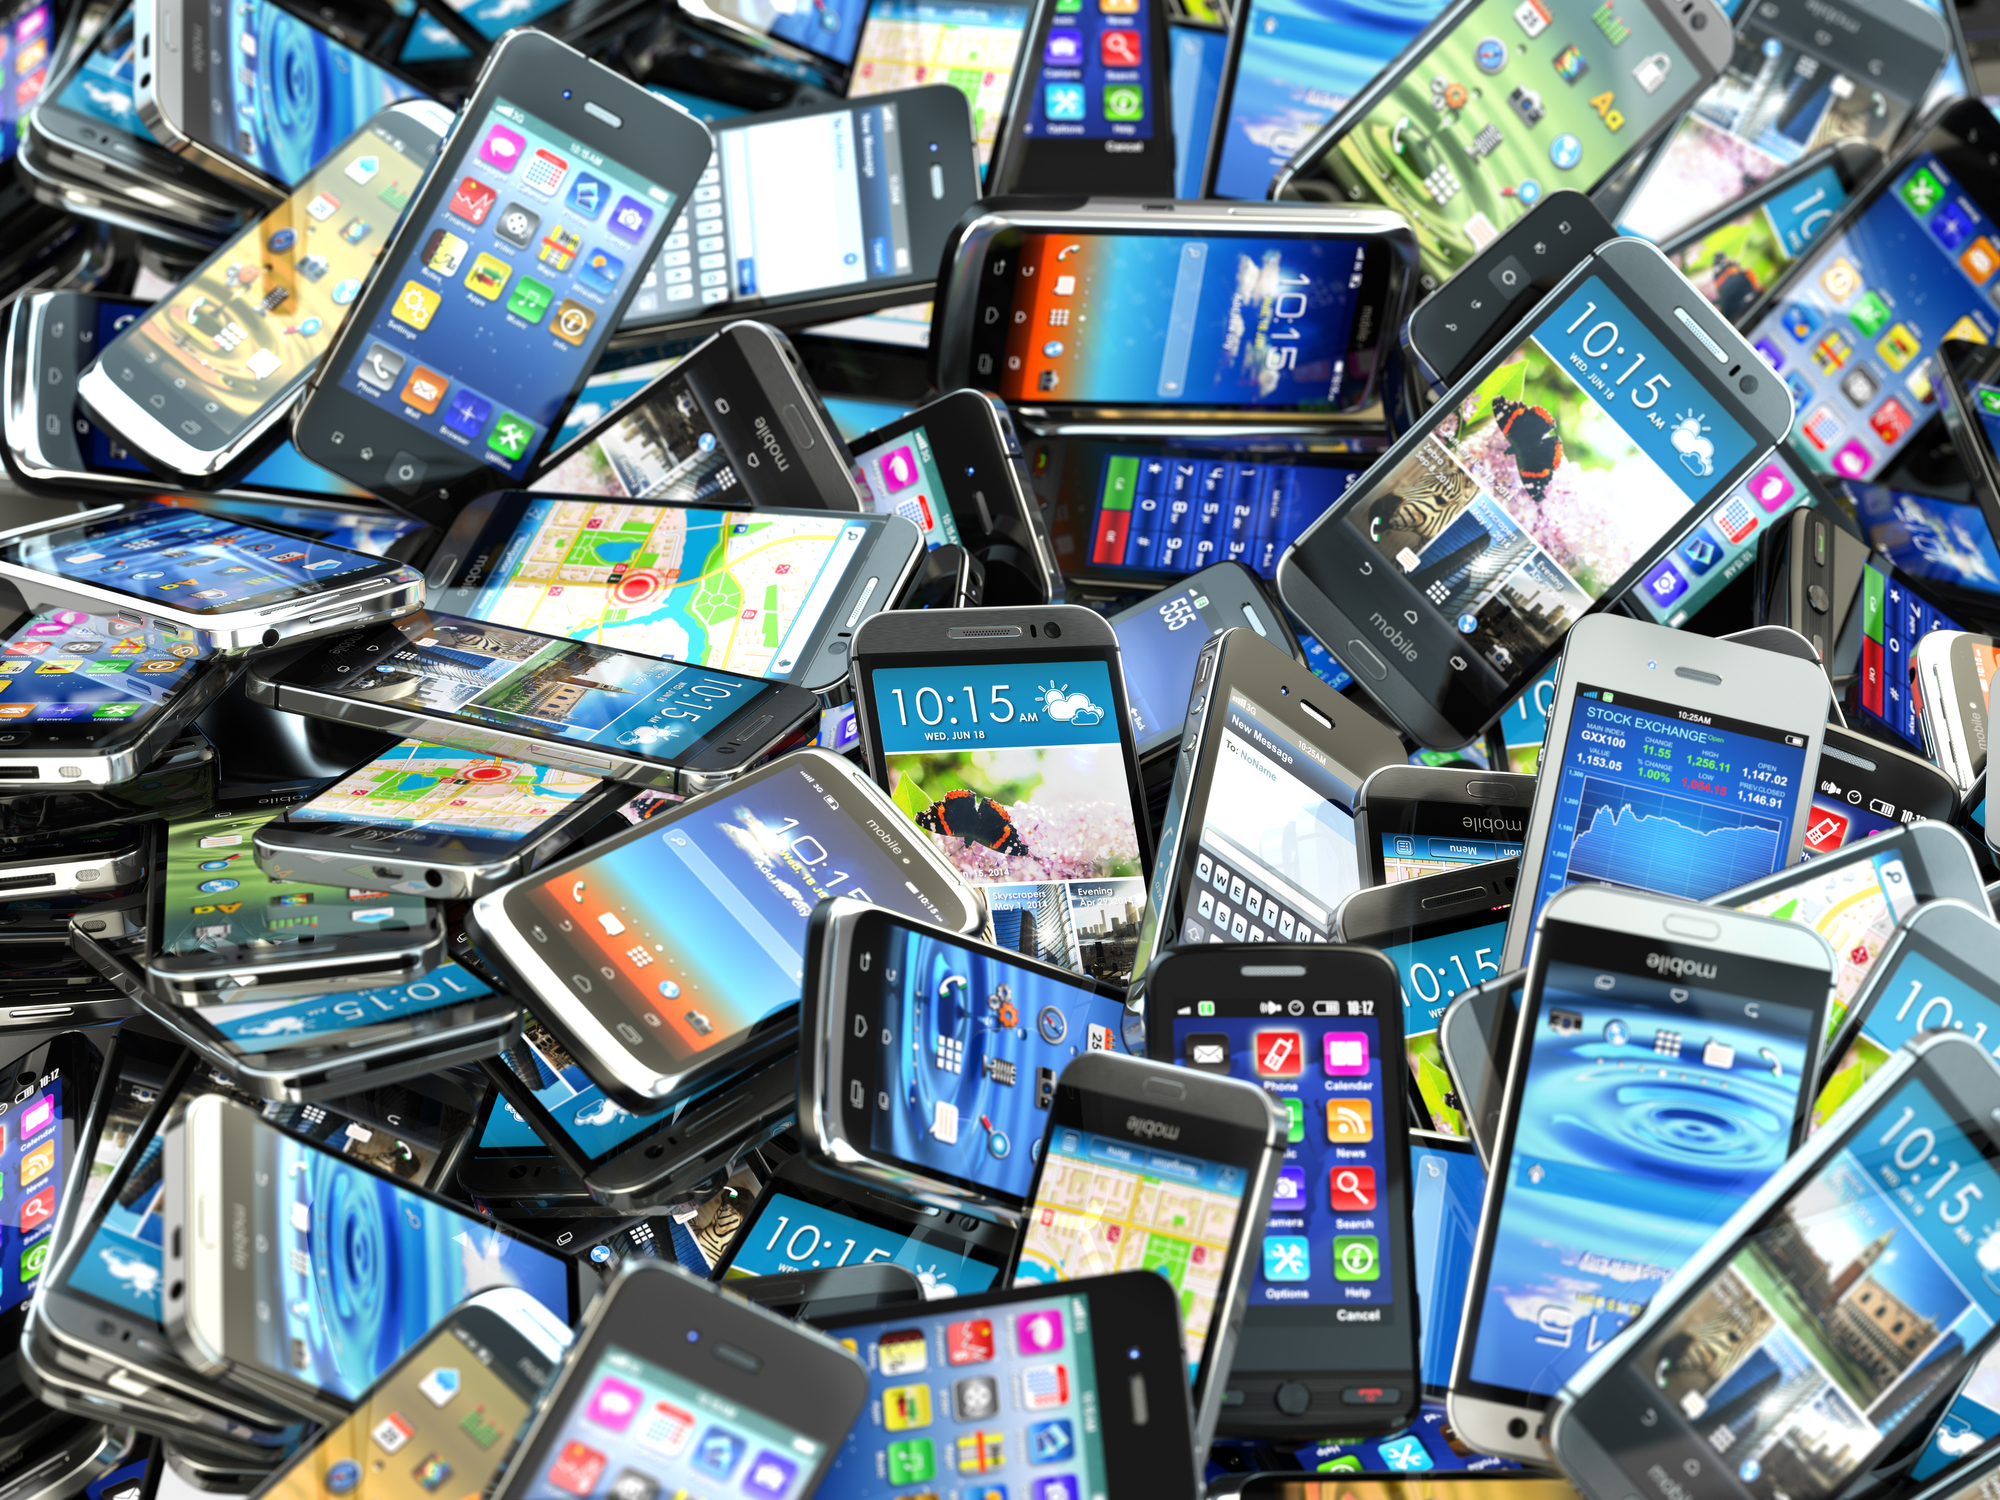 Unge er mest positive til å kjøpe brukt mobil | Release